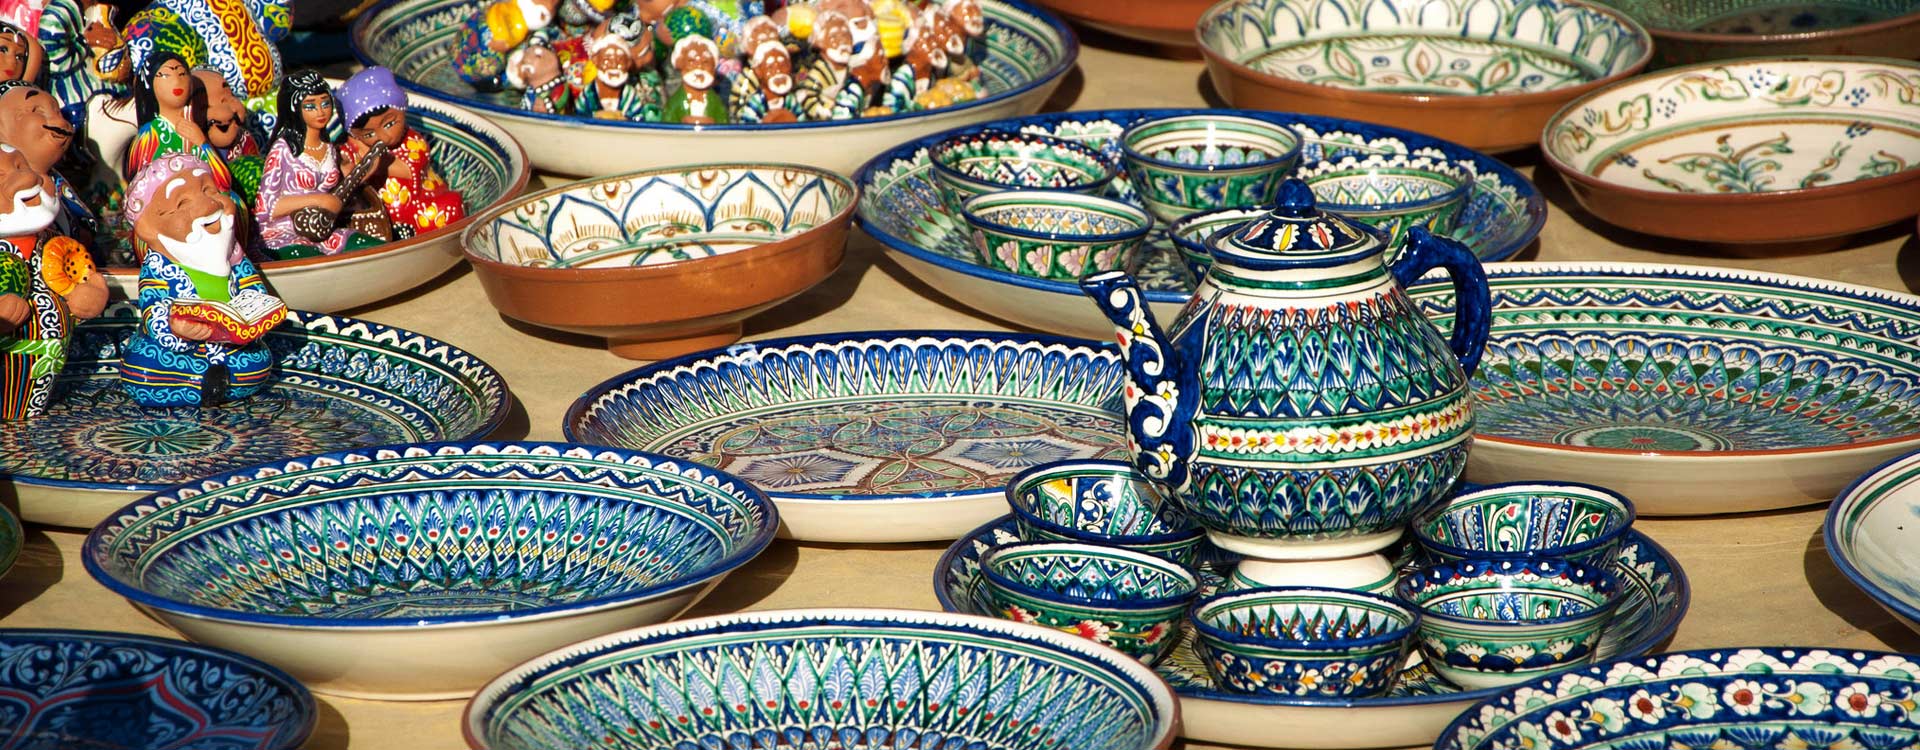 Uzbekistan Souvenirs